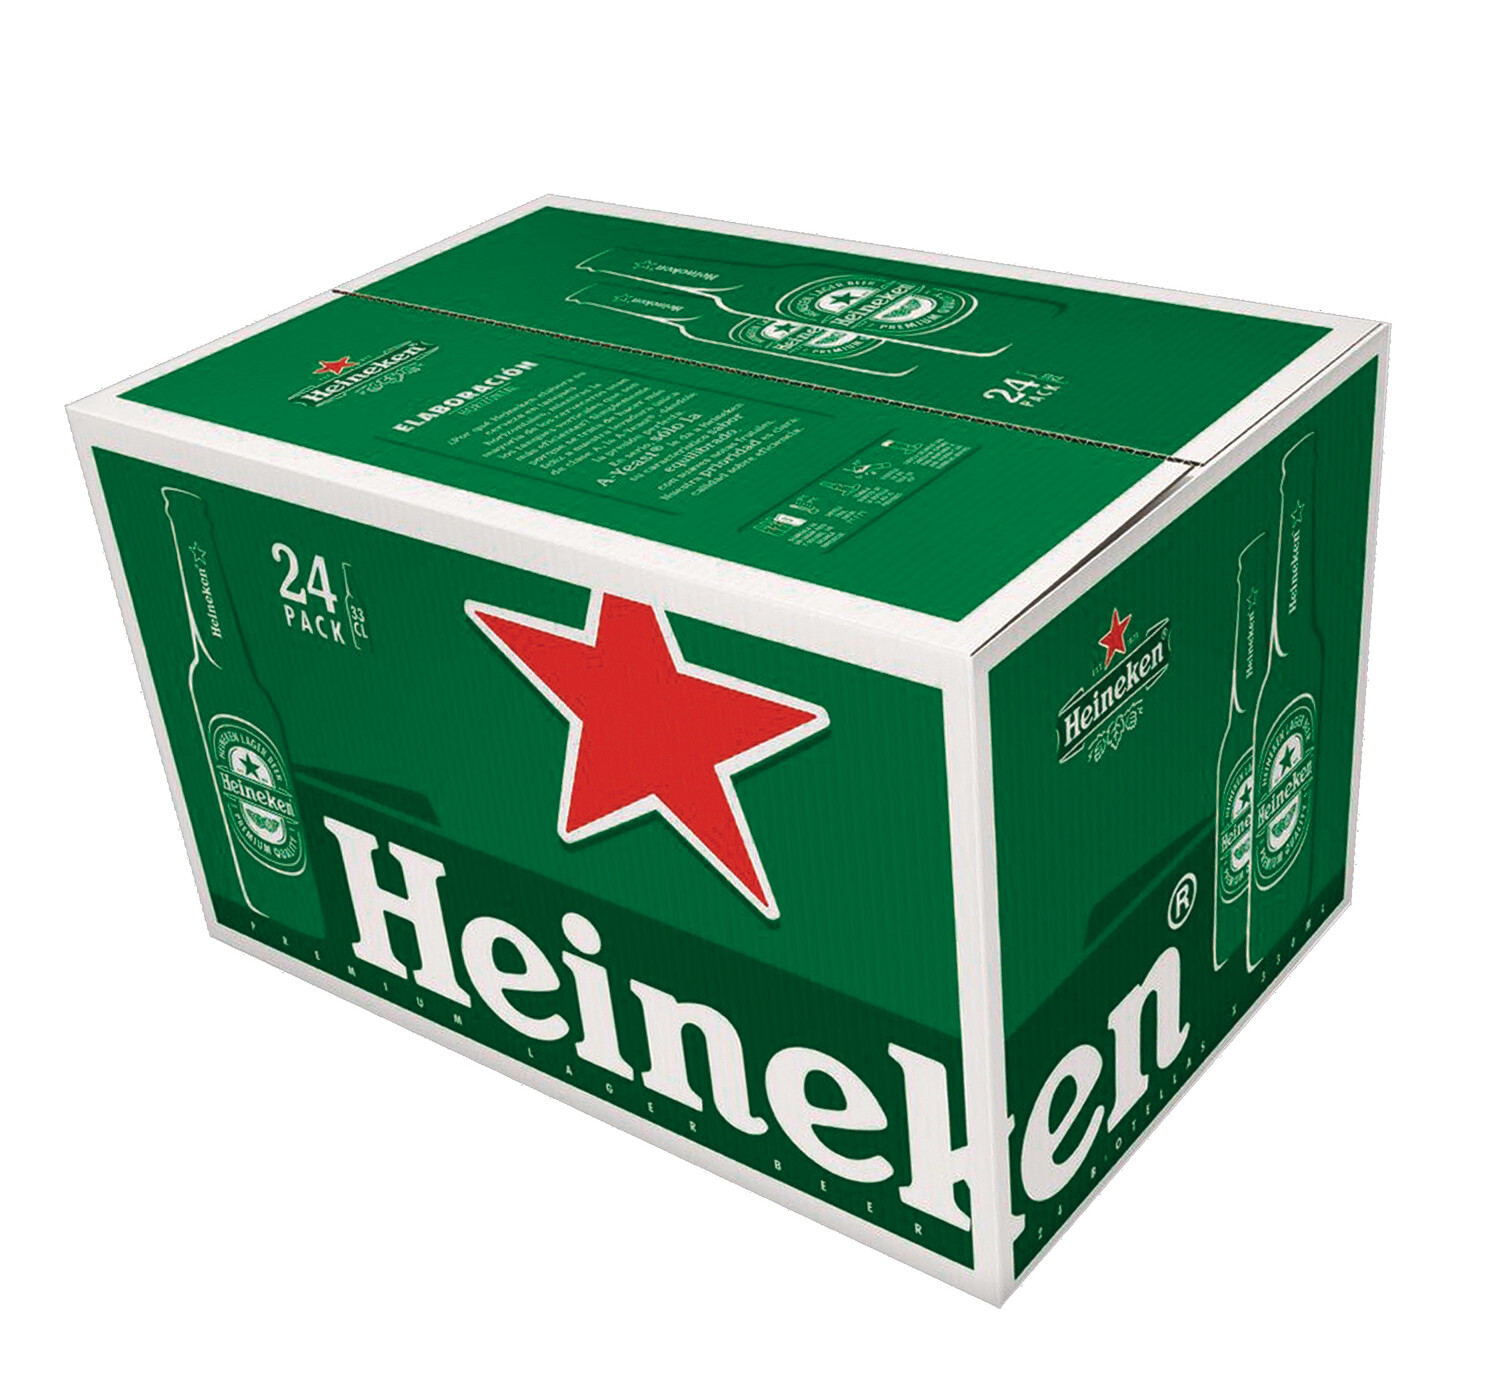 Heineken, 24 Pack, 25cl. Bottles